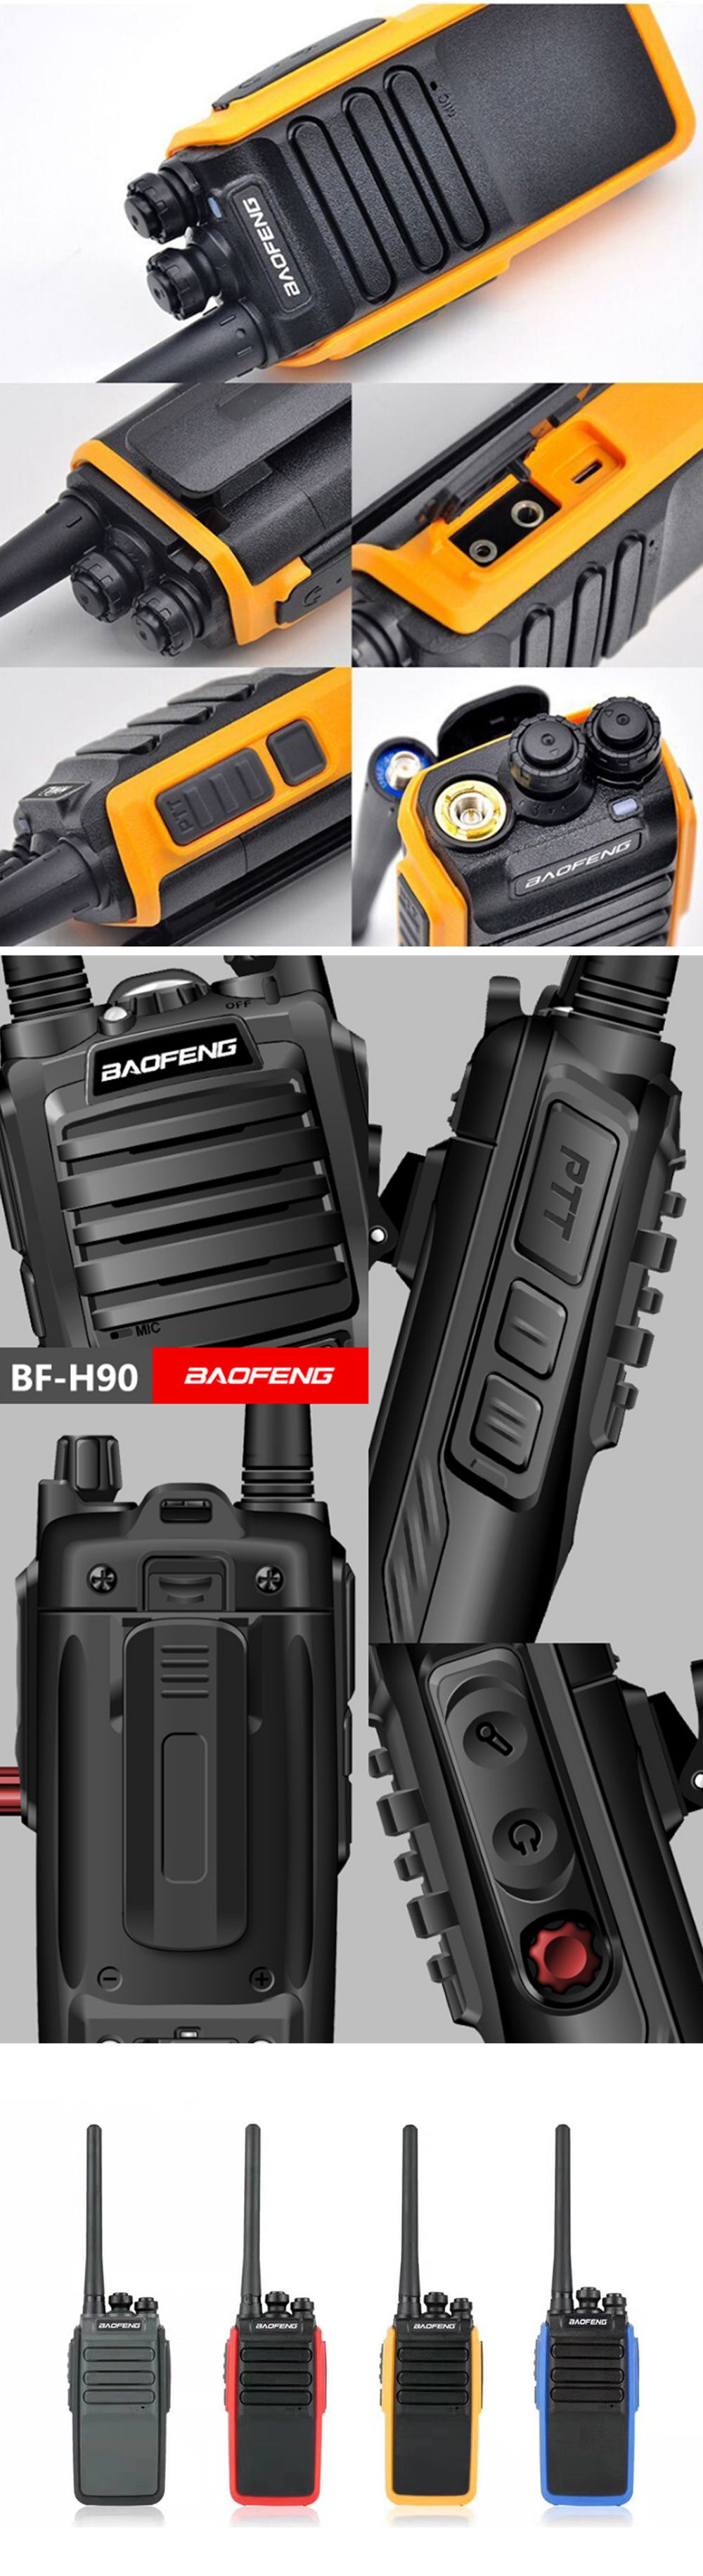 BAOFENG-V1-3W-1500mAh-UV-Dual-Band-Two-way-Handheld-Radio-Walkie-Talkie-16-Channels-Intercom-Driving-1730095